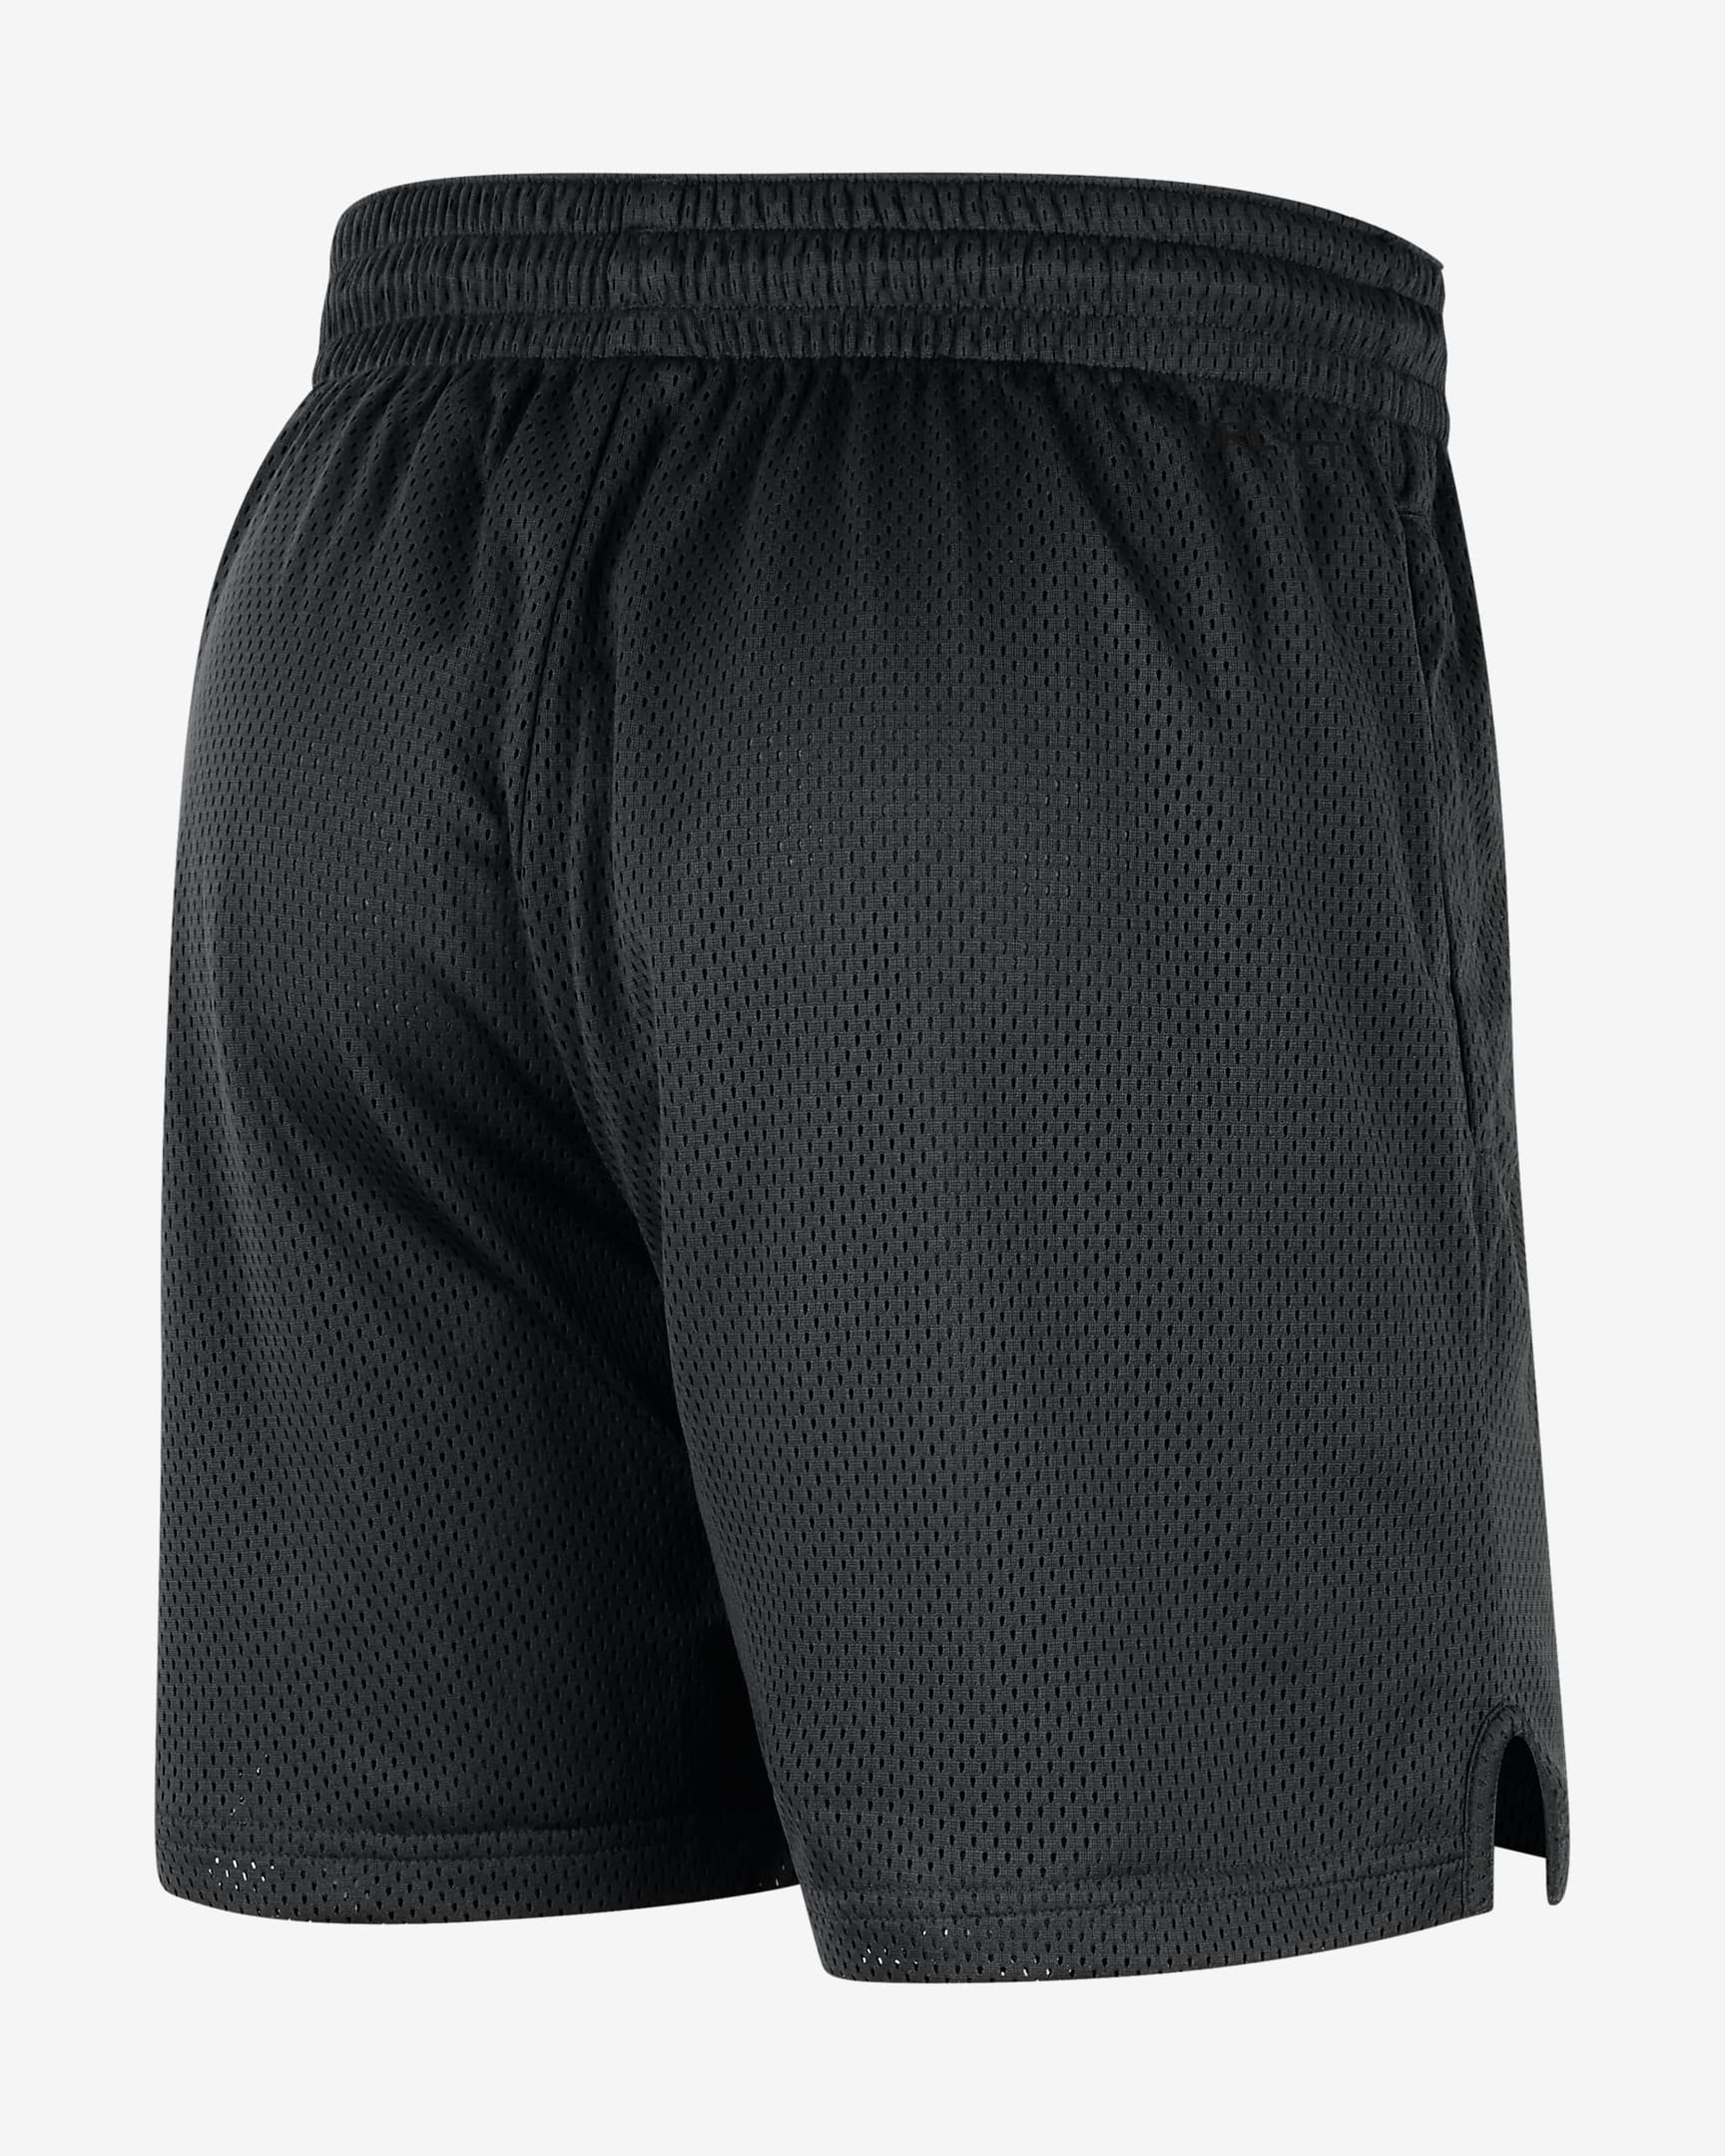 Shorts de tejido Knit Nike Dri-FIT College para hombre Georgia. Nike.com